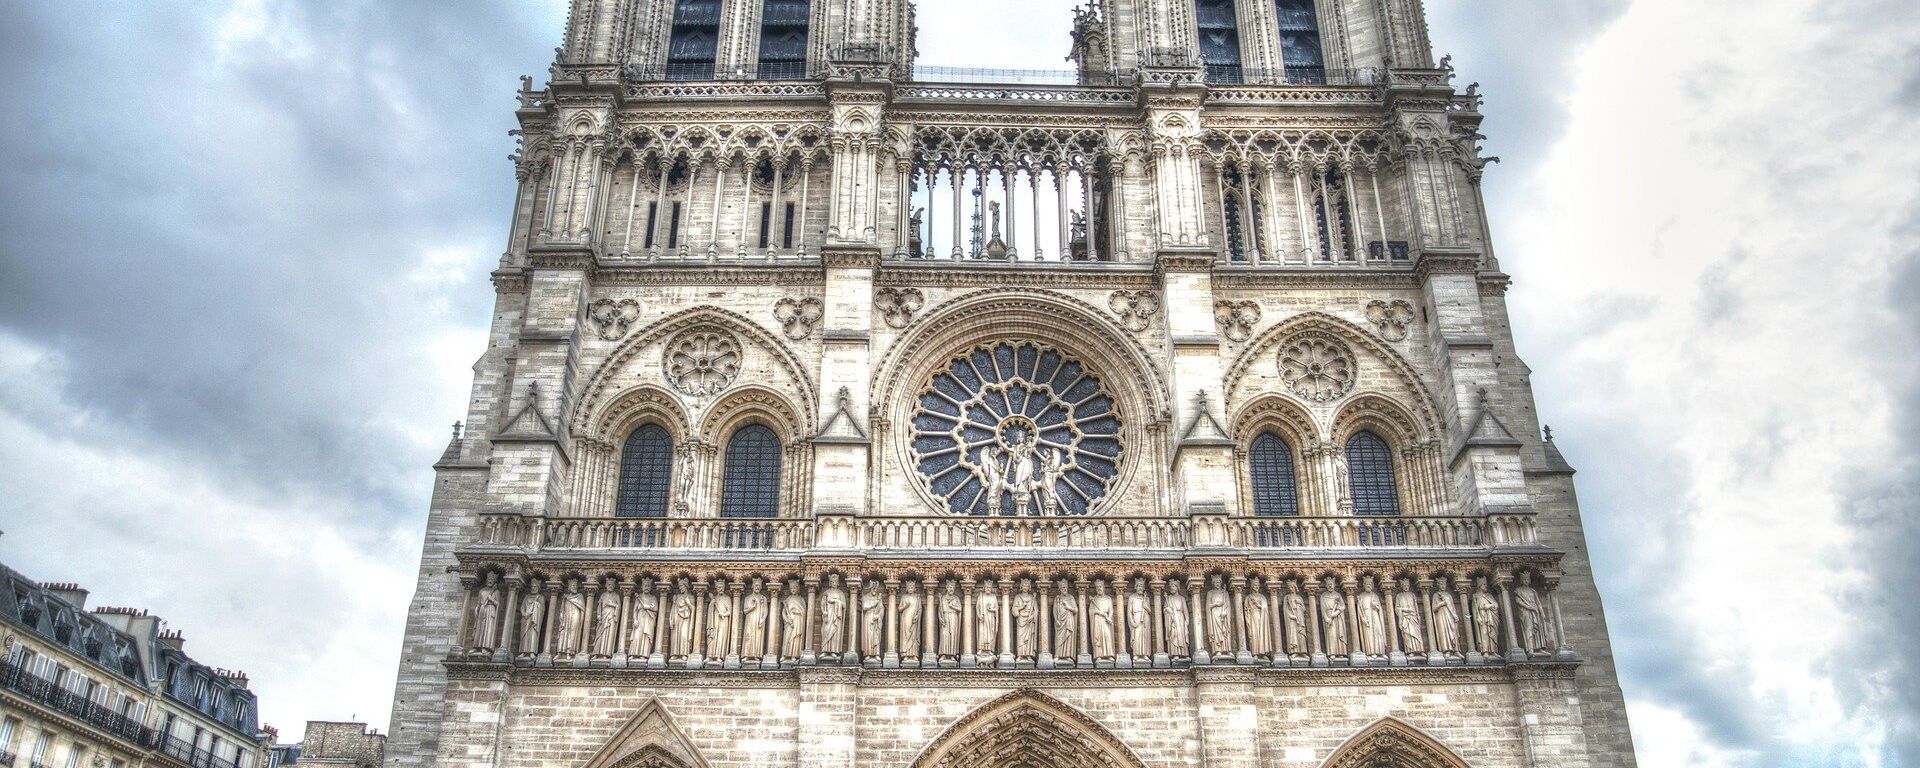 Notre Dame Cathedral - Sputnik International, 1920, 25.12.2020